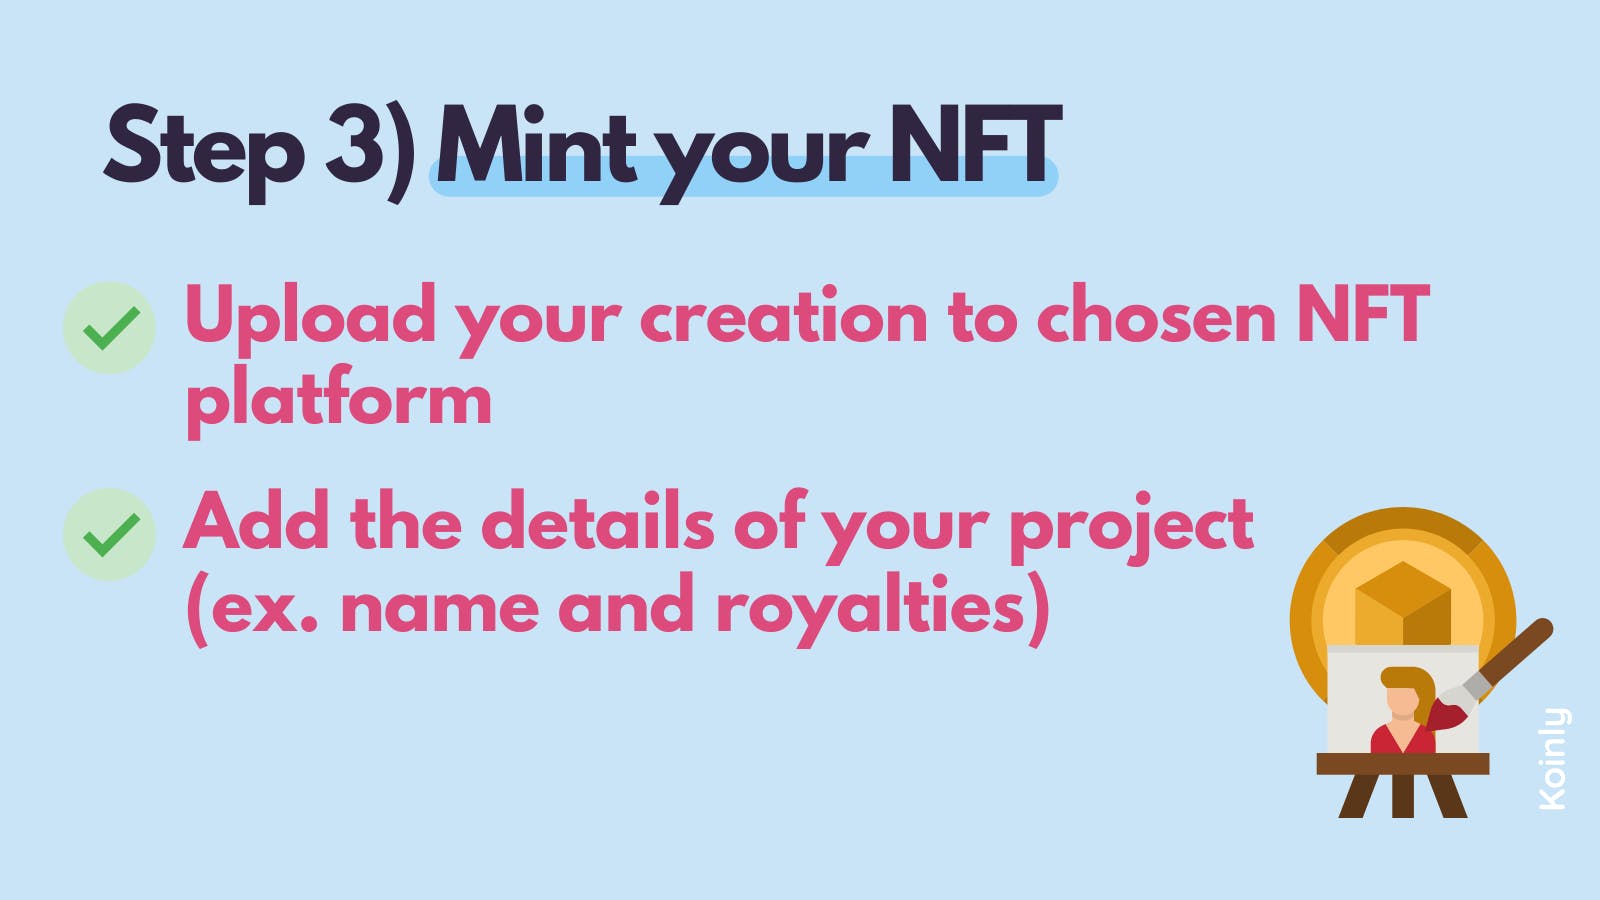 Mint your NFT